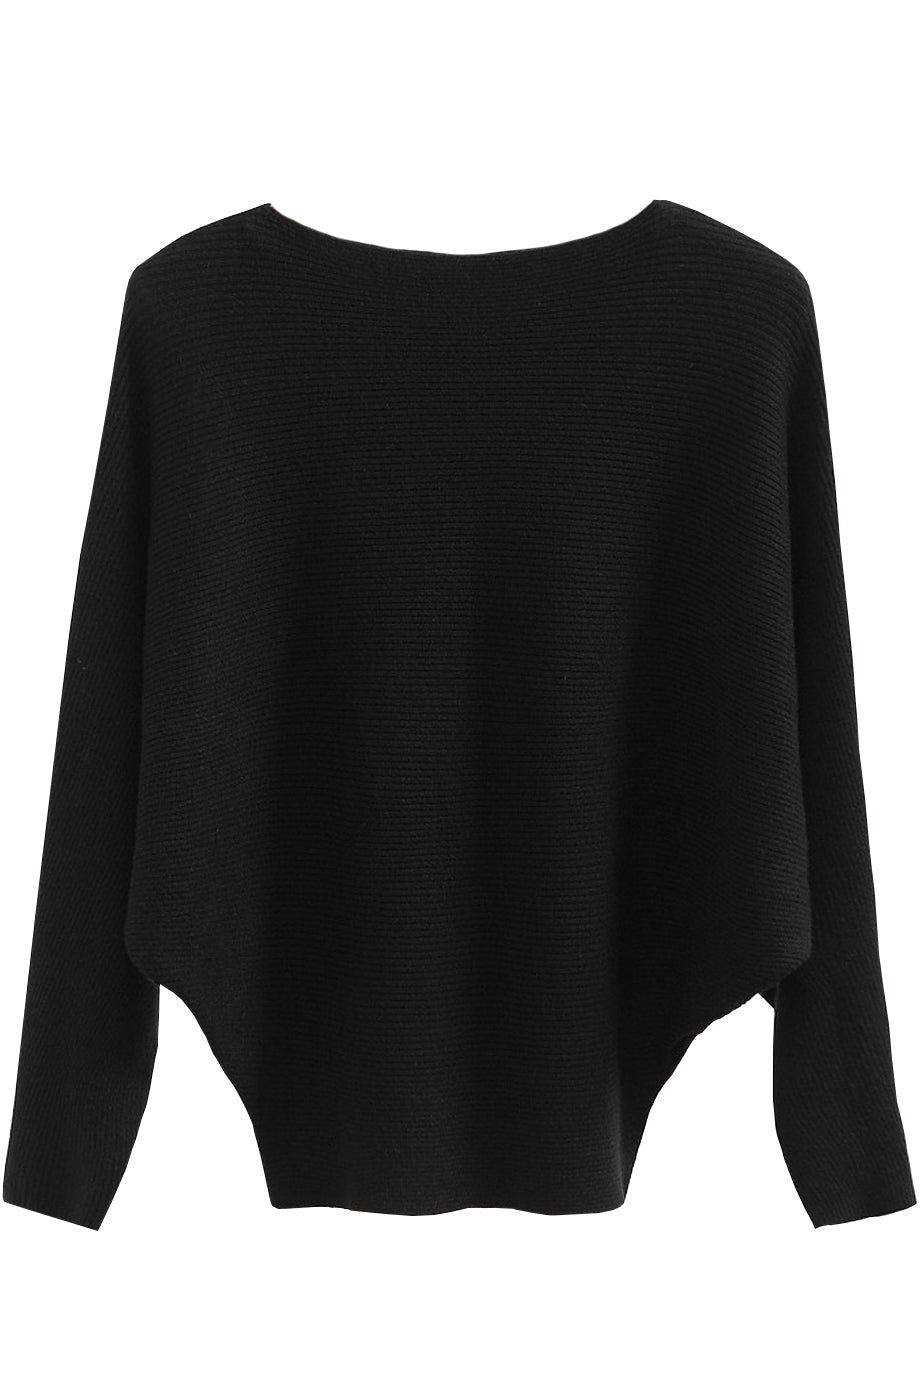 Μαύρη Βαμβακερή Μπλούζα με Cashmere | Γυναικεία Ρούχα - Laura Ferri